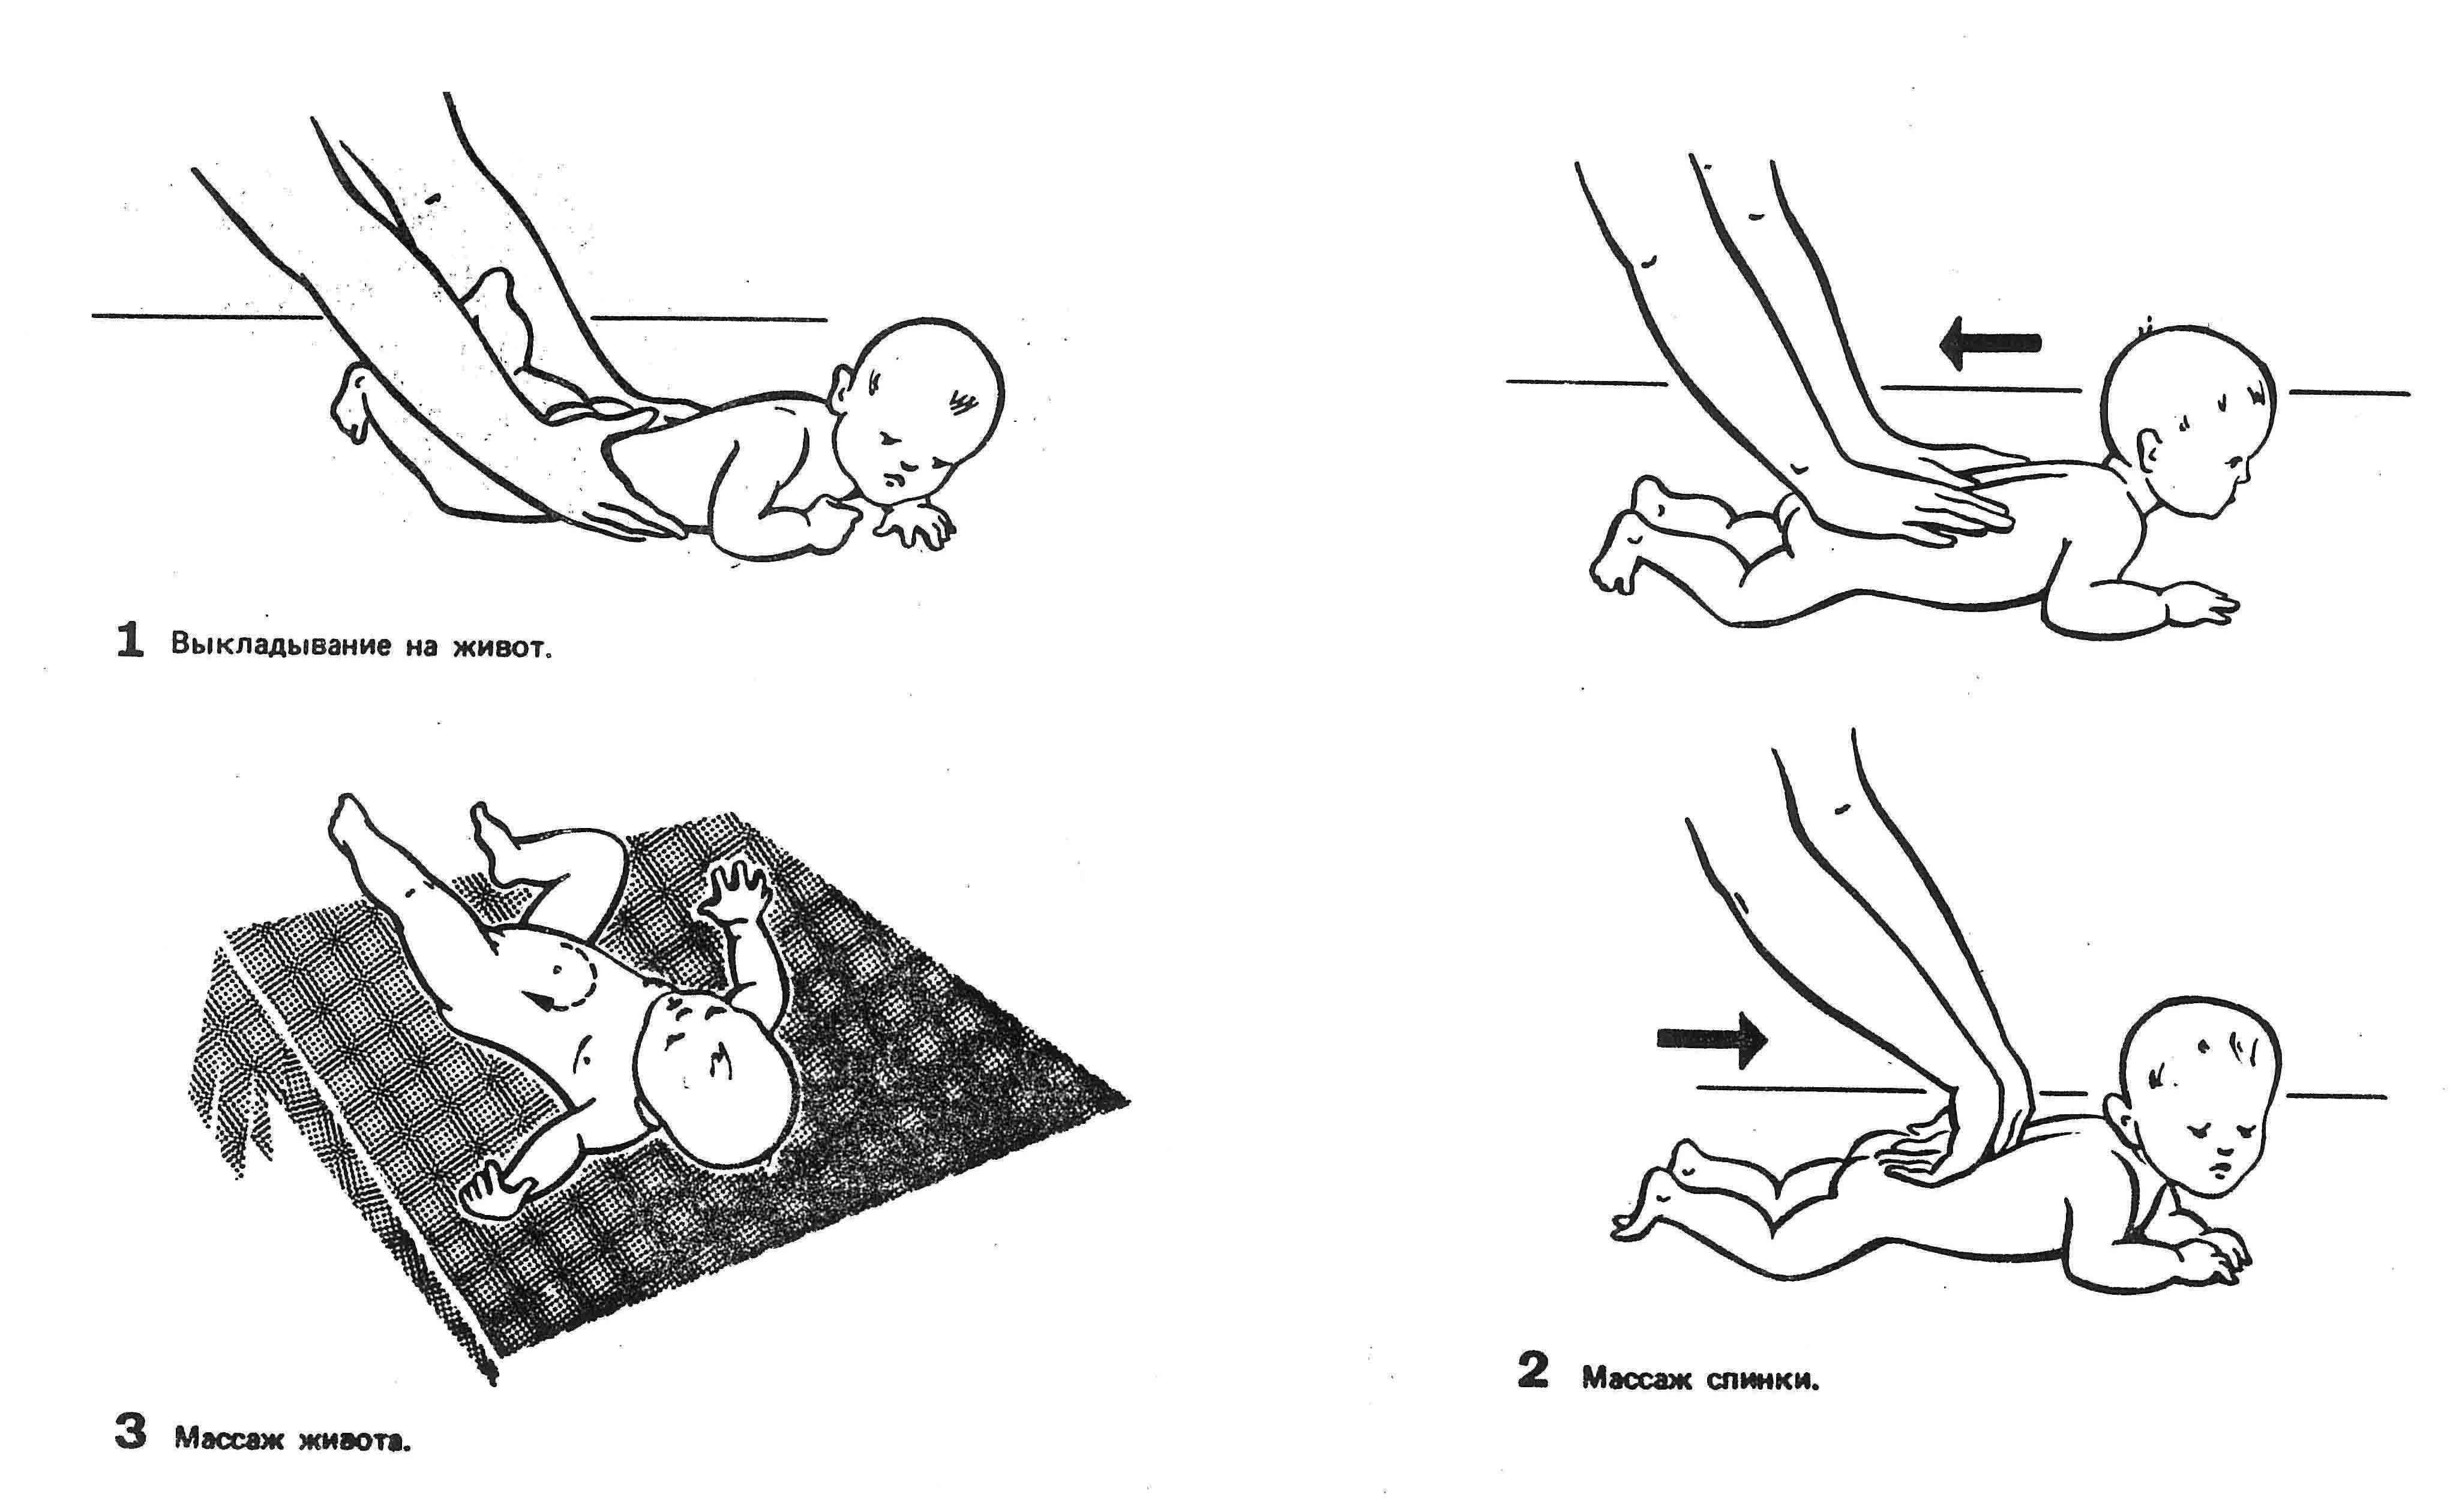 Зачем новорожденным и грудничкам нужен массаж? - аква-доктор плавание